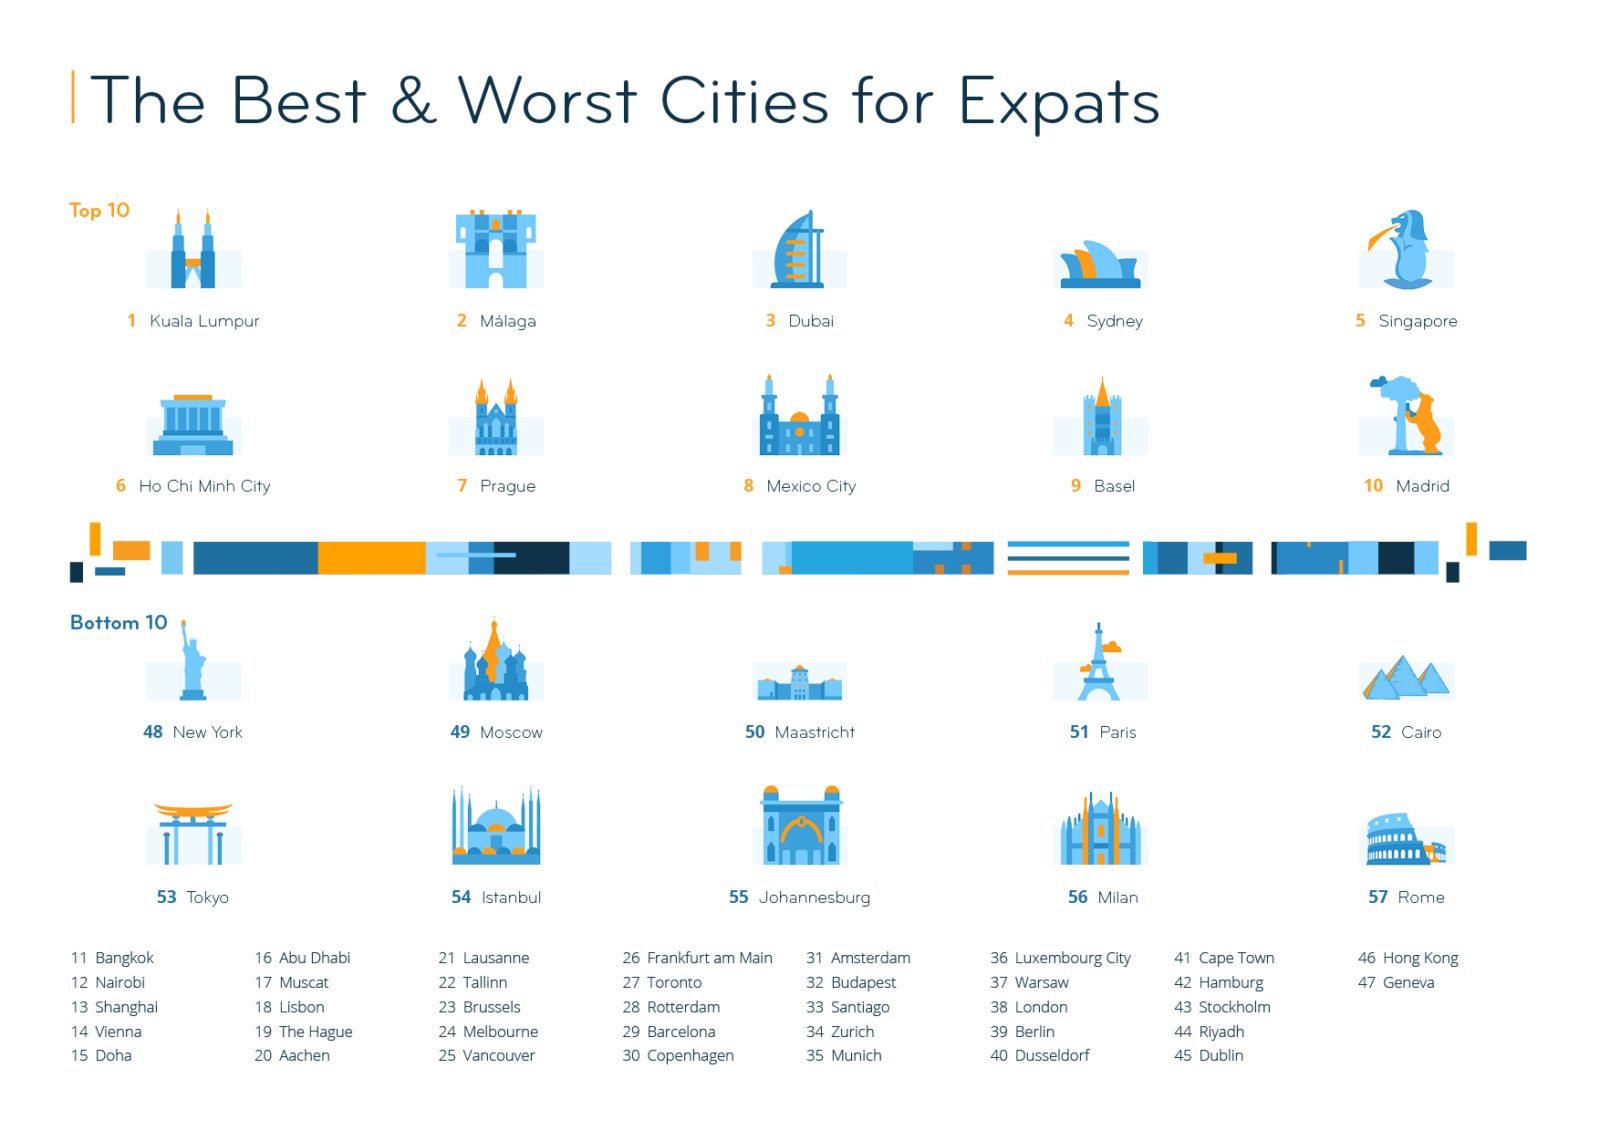 Бангкок занял четвёртое место в рейтинге лучших городов для экспатов в ЮВА